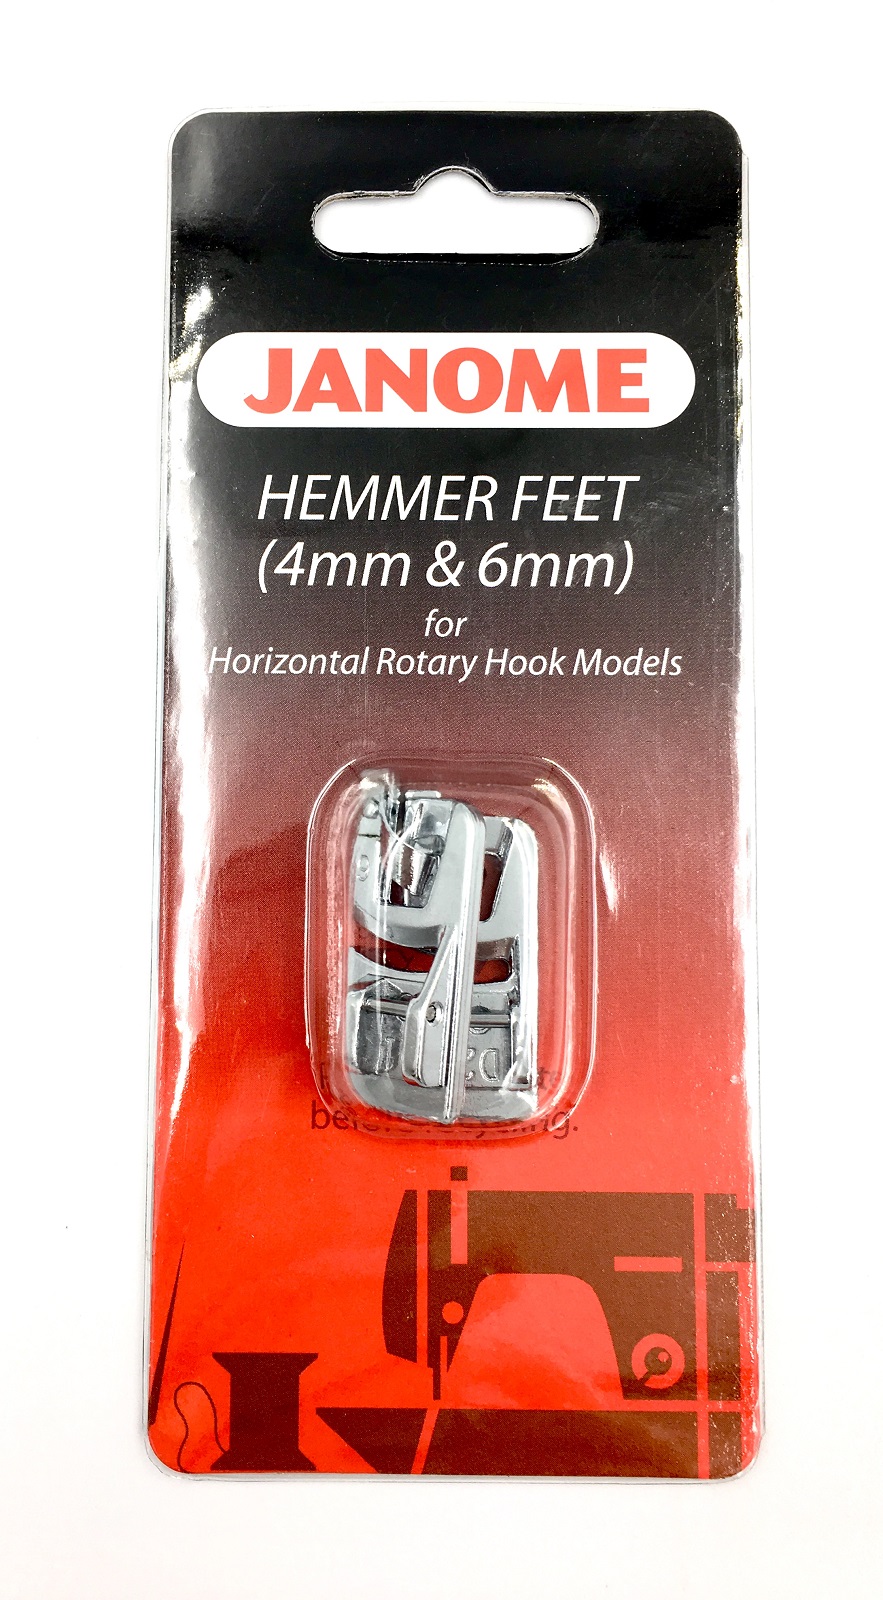 Hemmer Feet Set (4mm & 6mm) 200326001